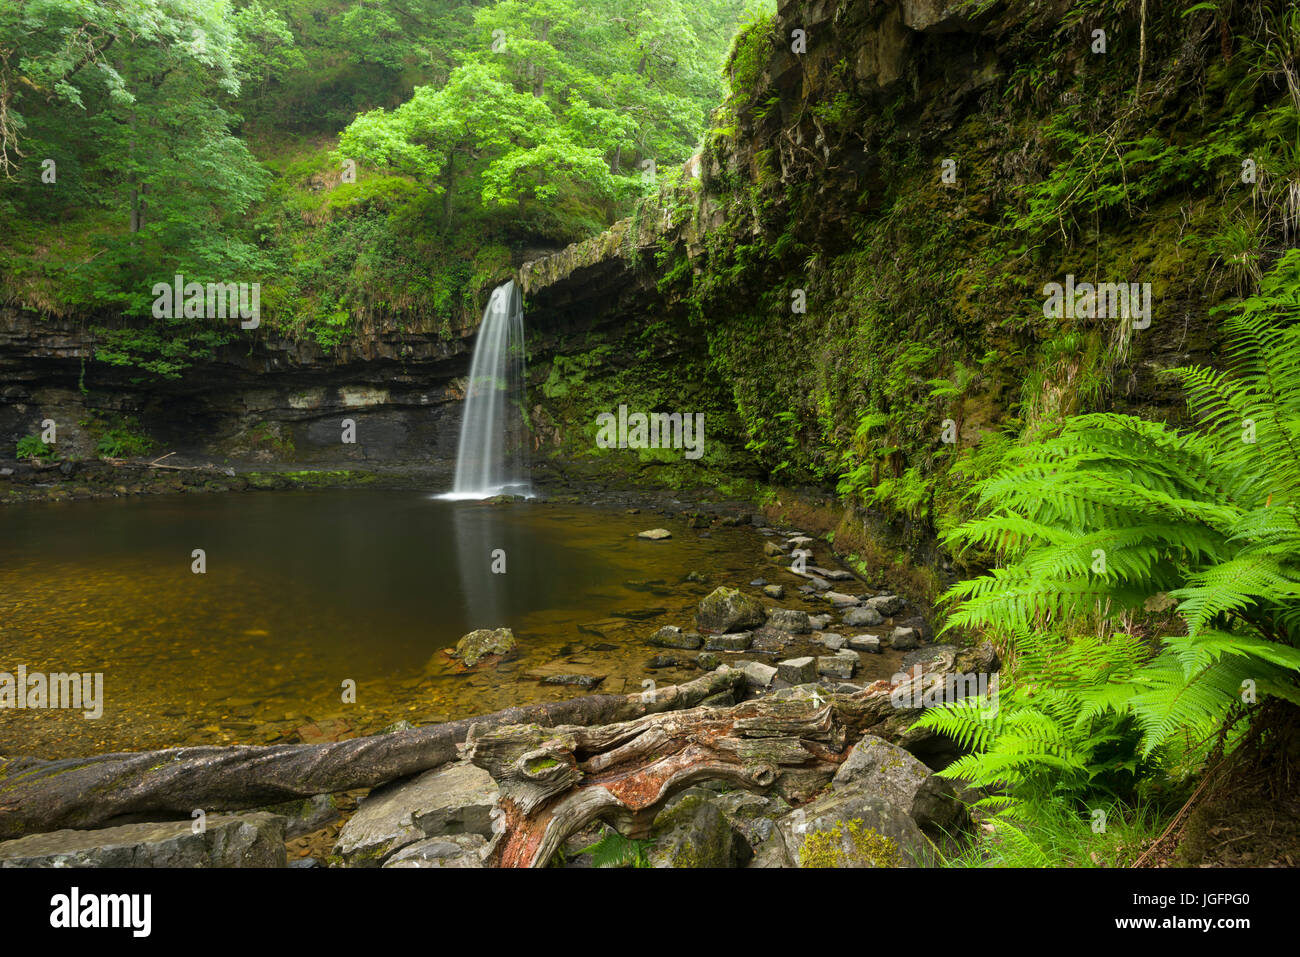 Sgwd Gwladus (Lady's Falls) waterfall on the Afon Pyrddin in the Bannau Brycheiniog (Brecon Beacons) National Park near Pontneddfechan, Powys, Wales. Stock Photo